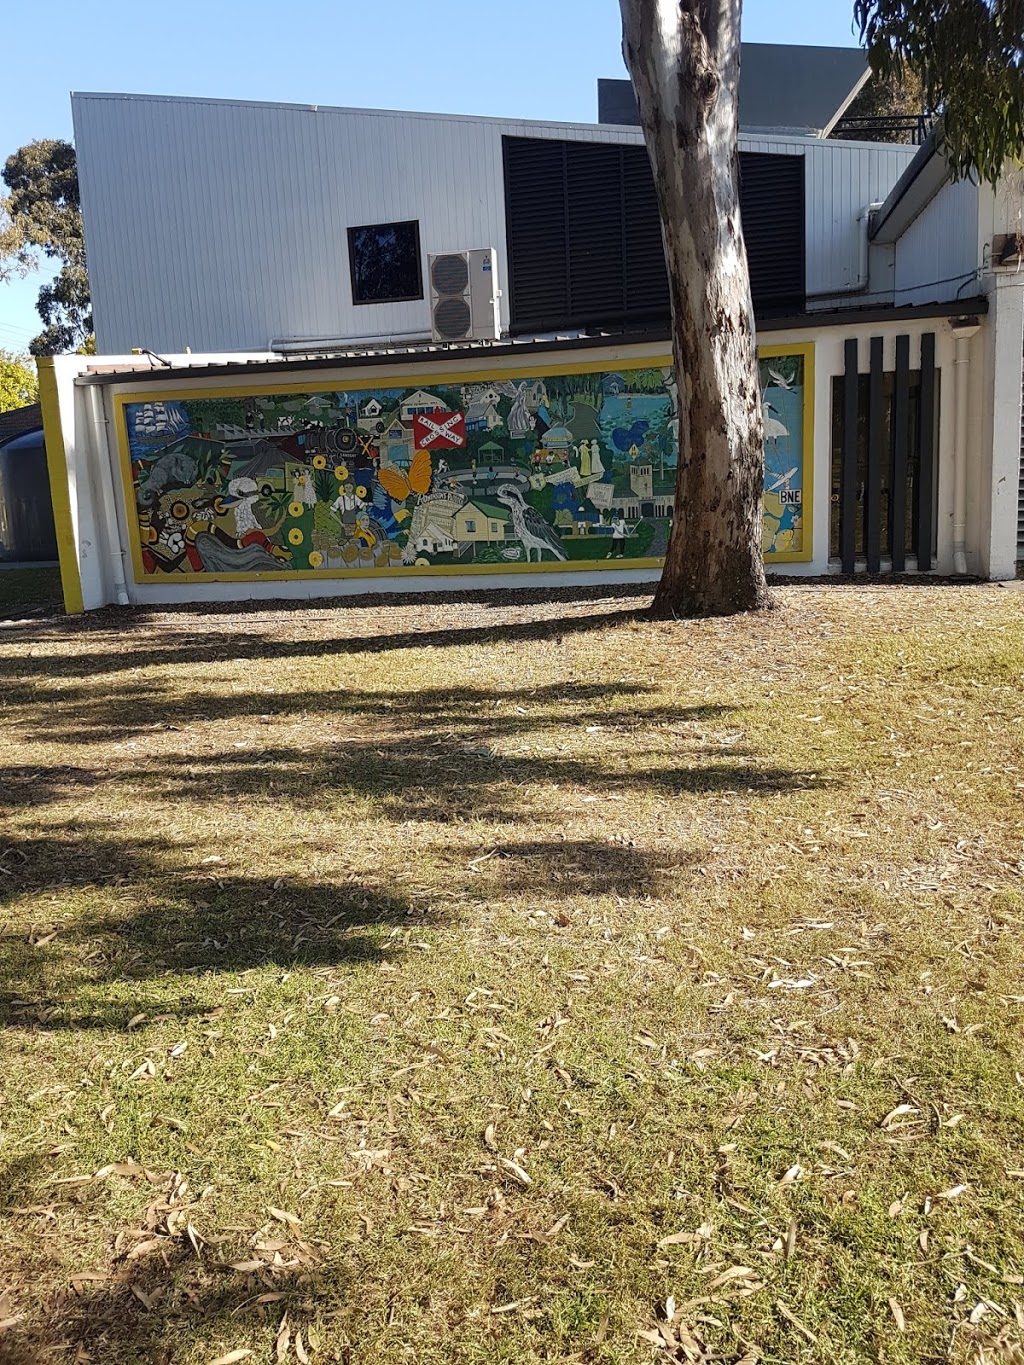 Banyo Memorial Park | park | 284 St Vincents Rd, Banyo QLD 4014, Australia